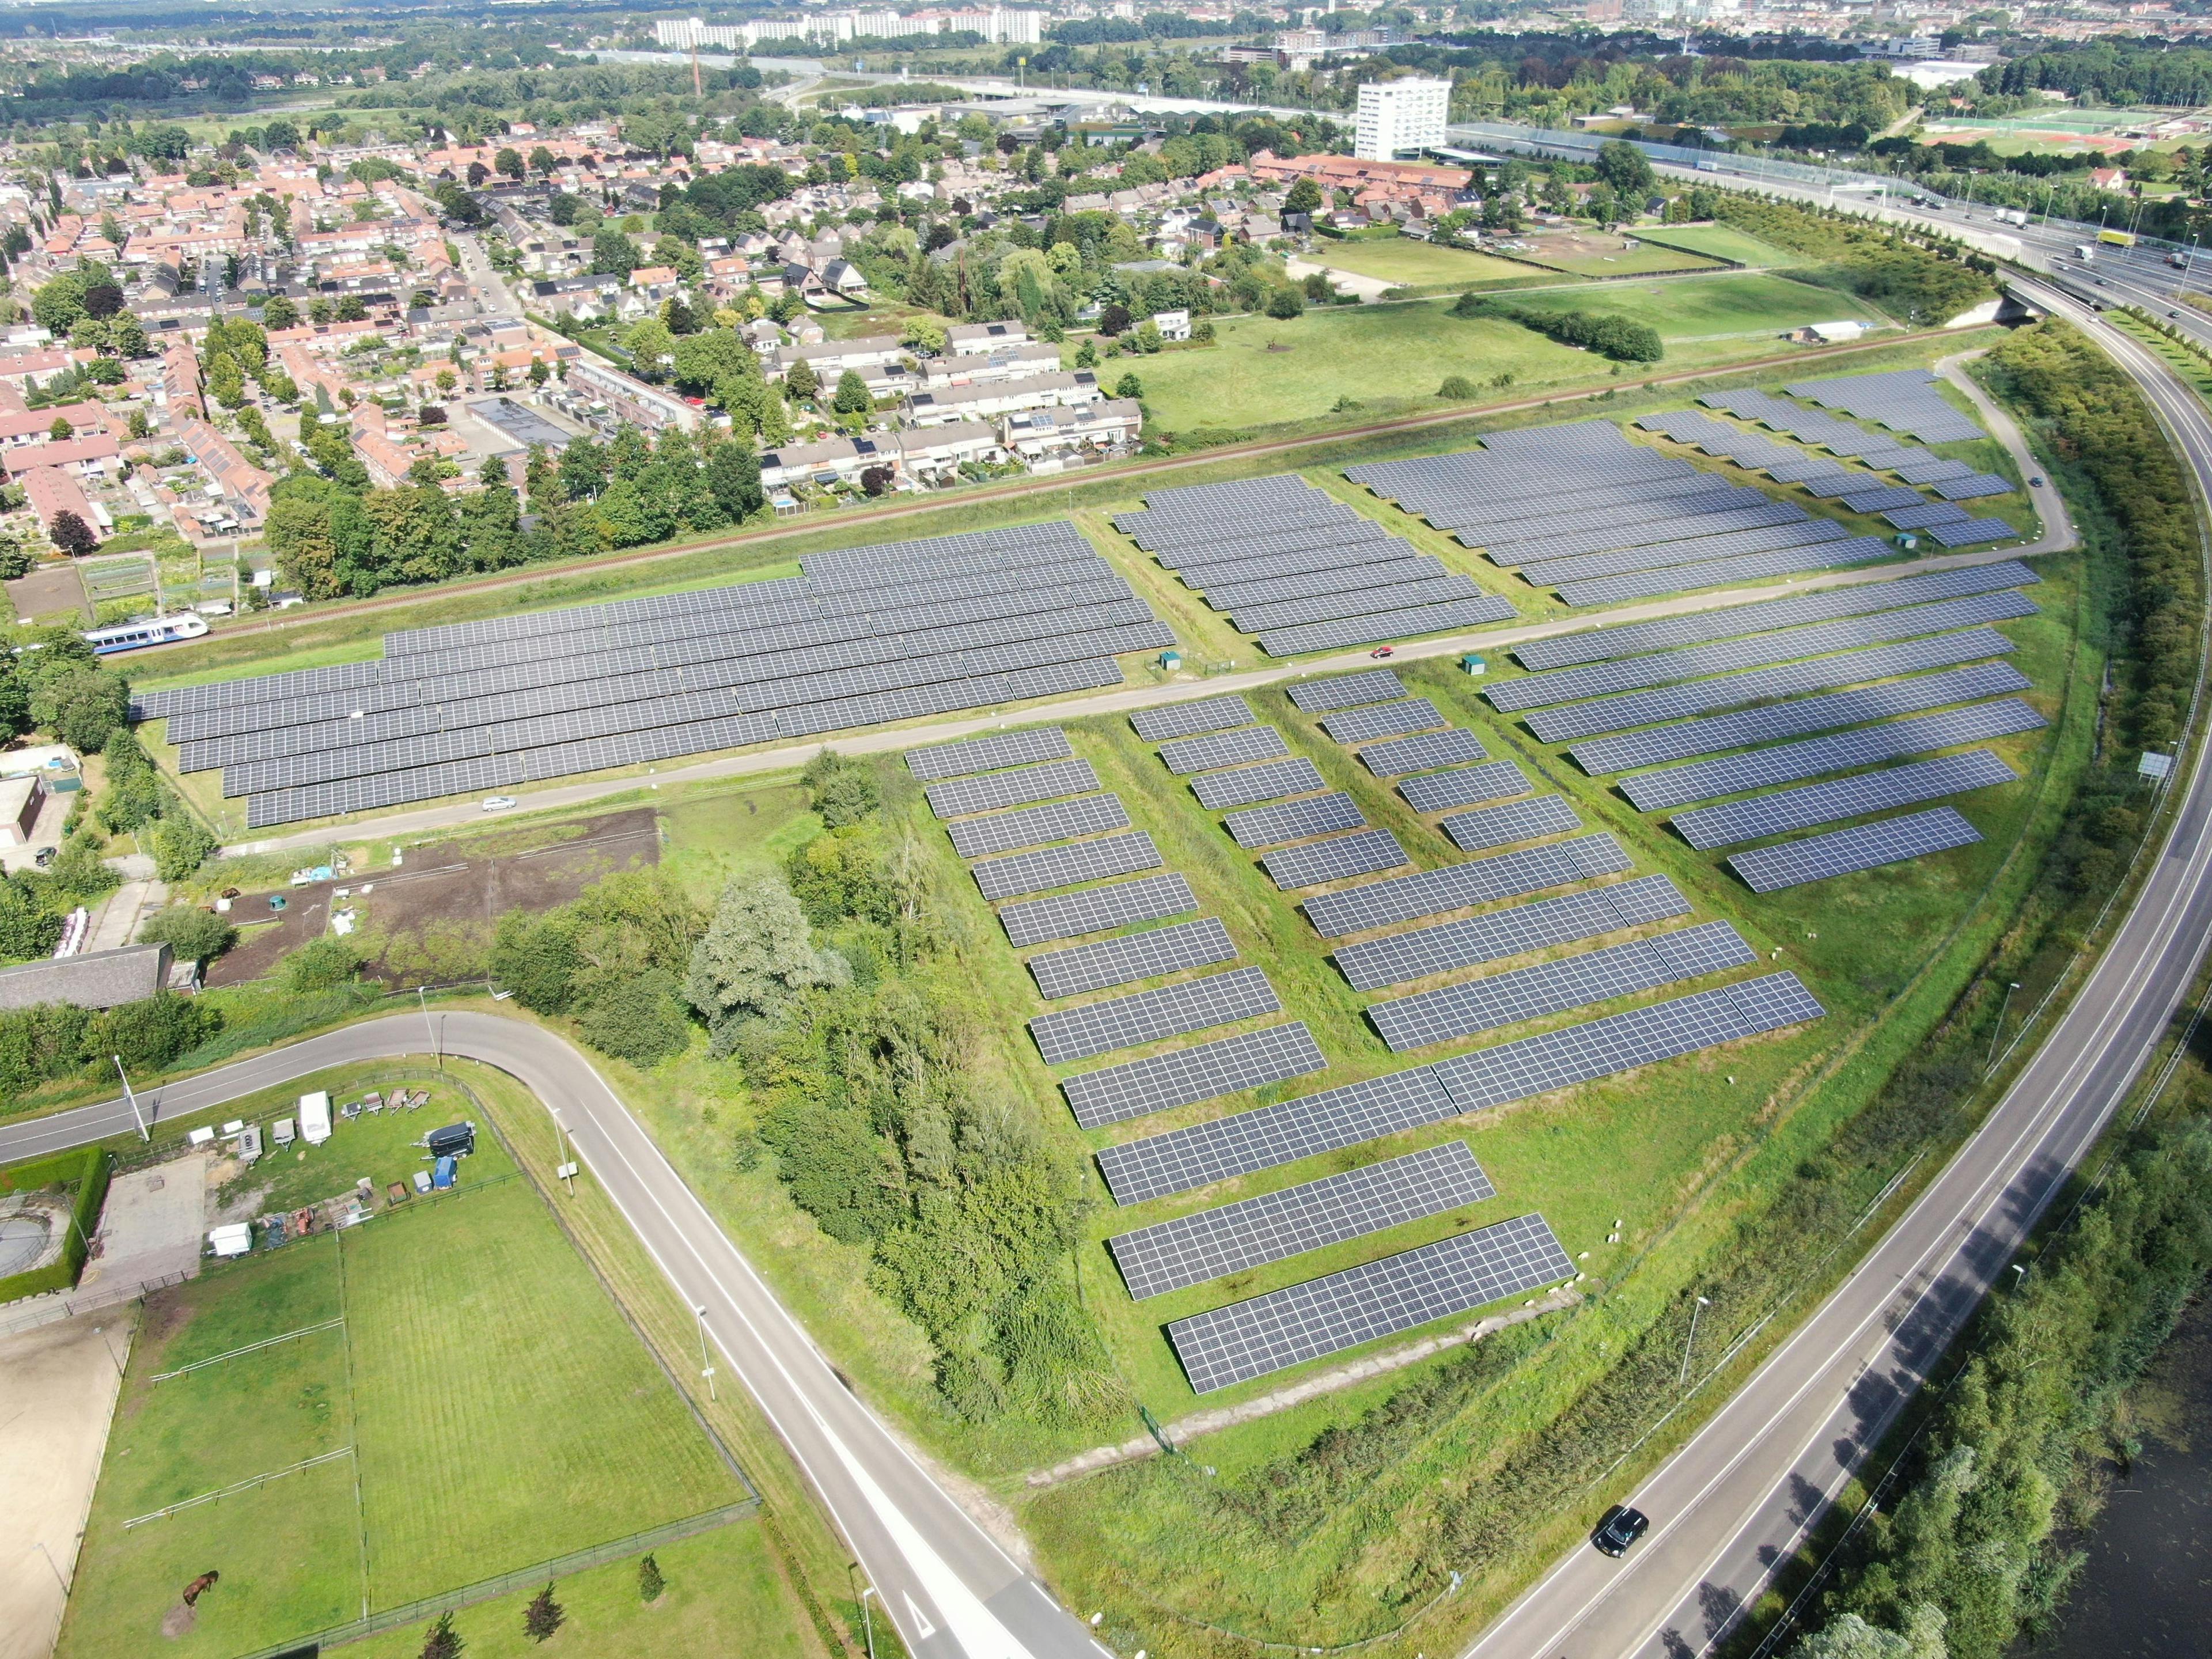 Tegelen freefield project in the Netherlands